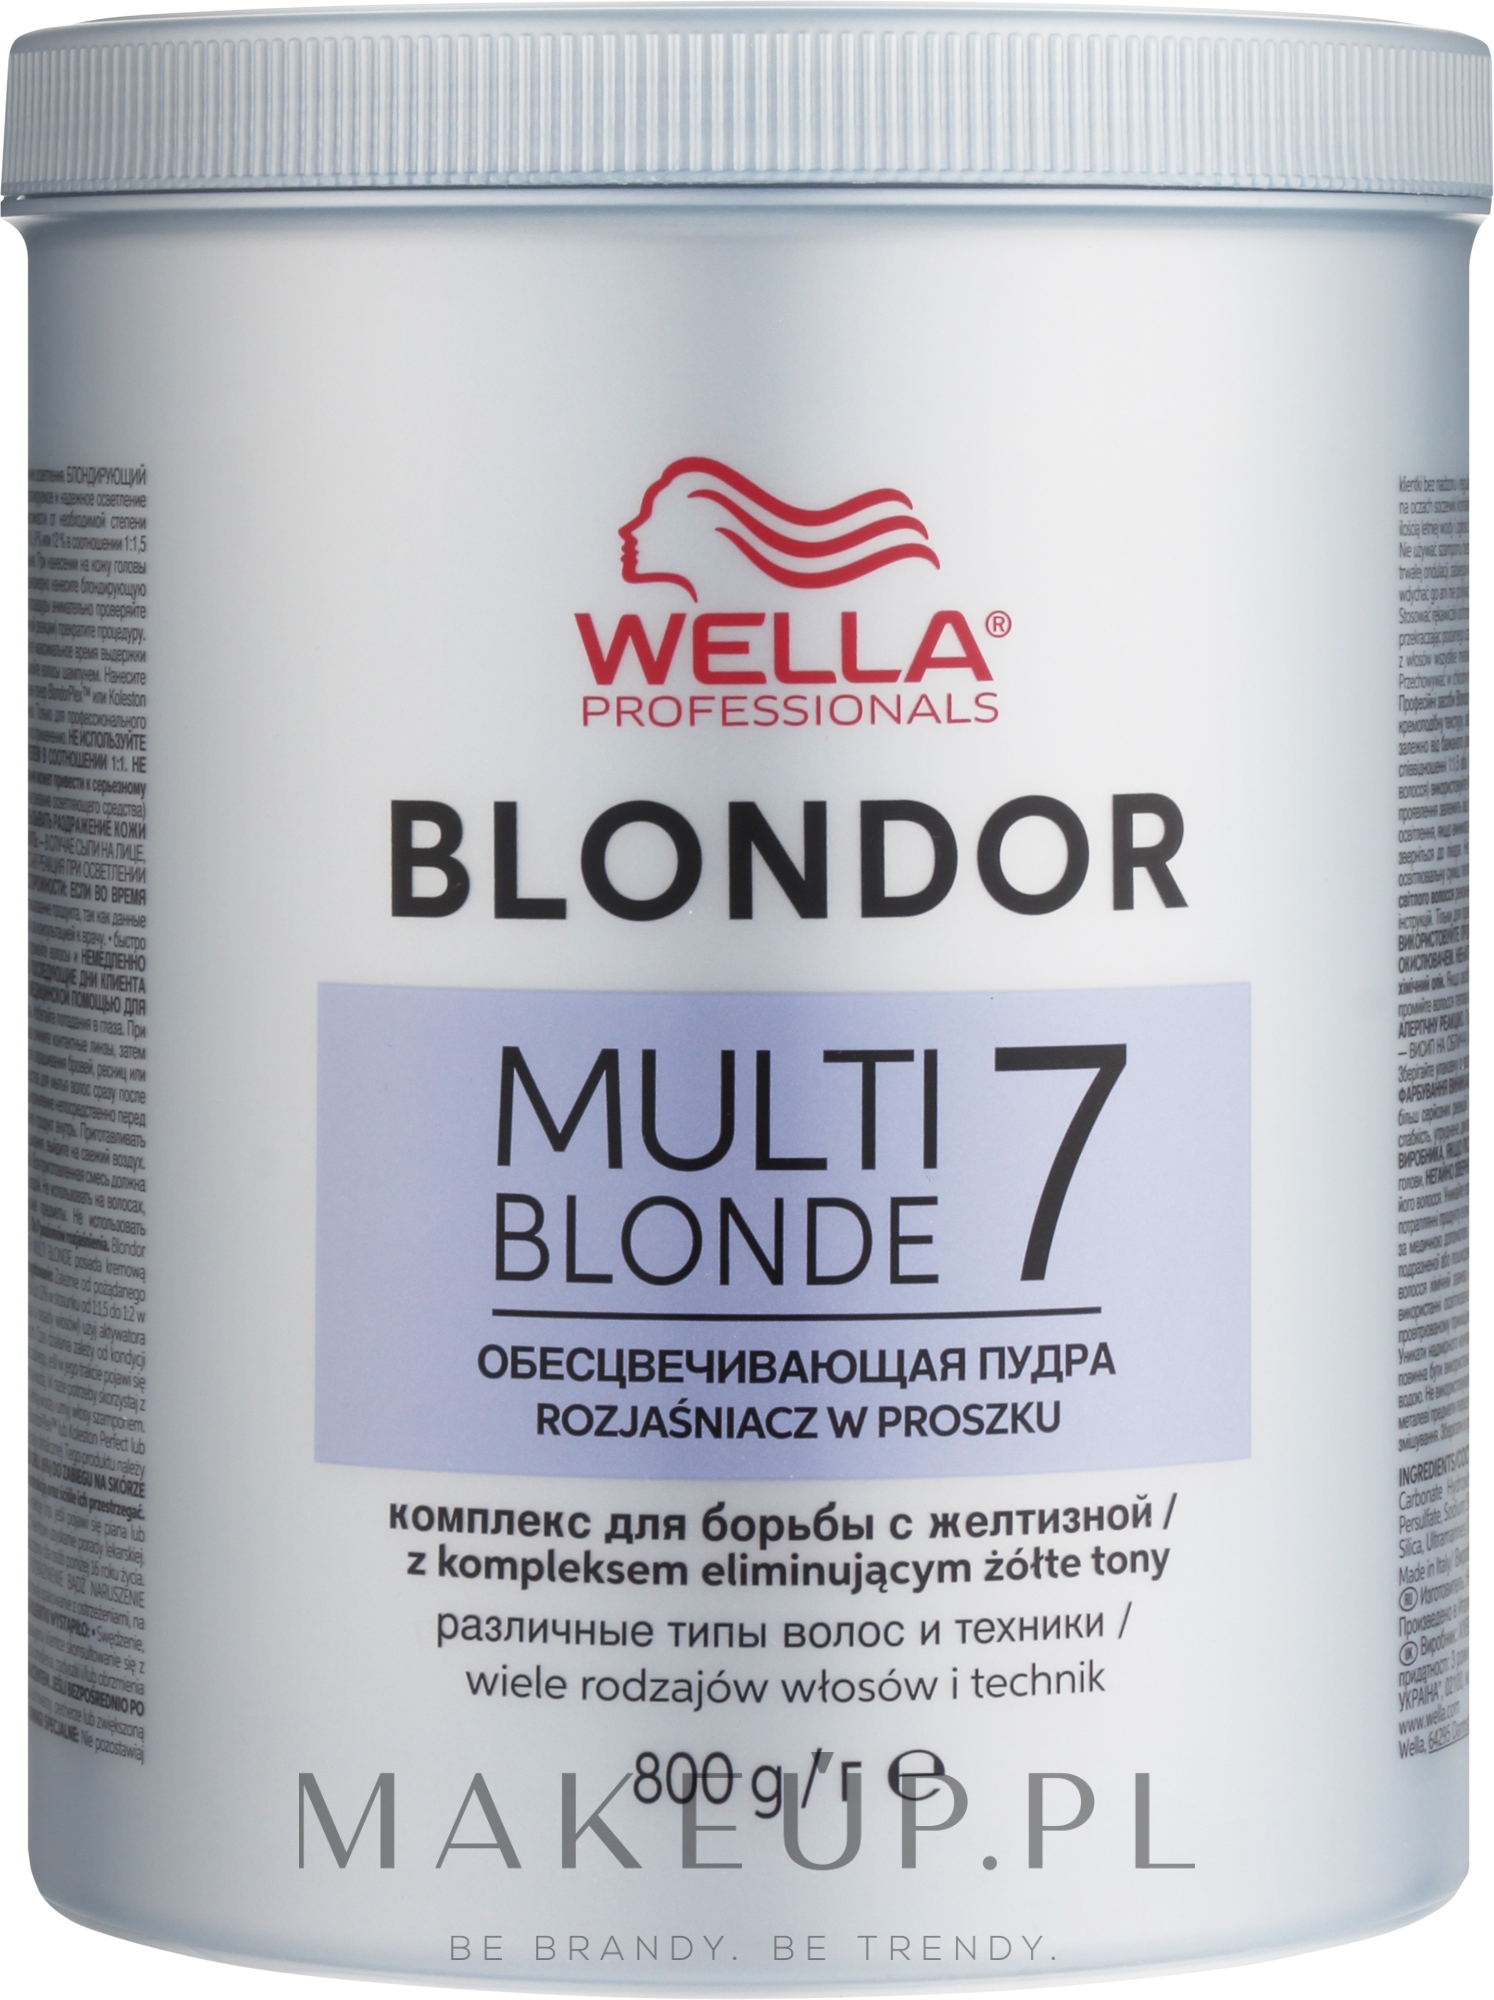 Puder rozjaśniający do włosów - Wella Professionals Blondor Multi Blonde 7 Powder Lightener — Zdjęcie 800 g